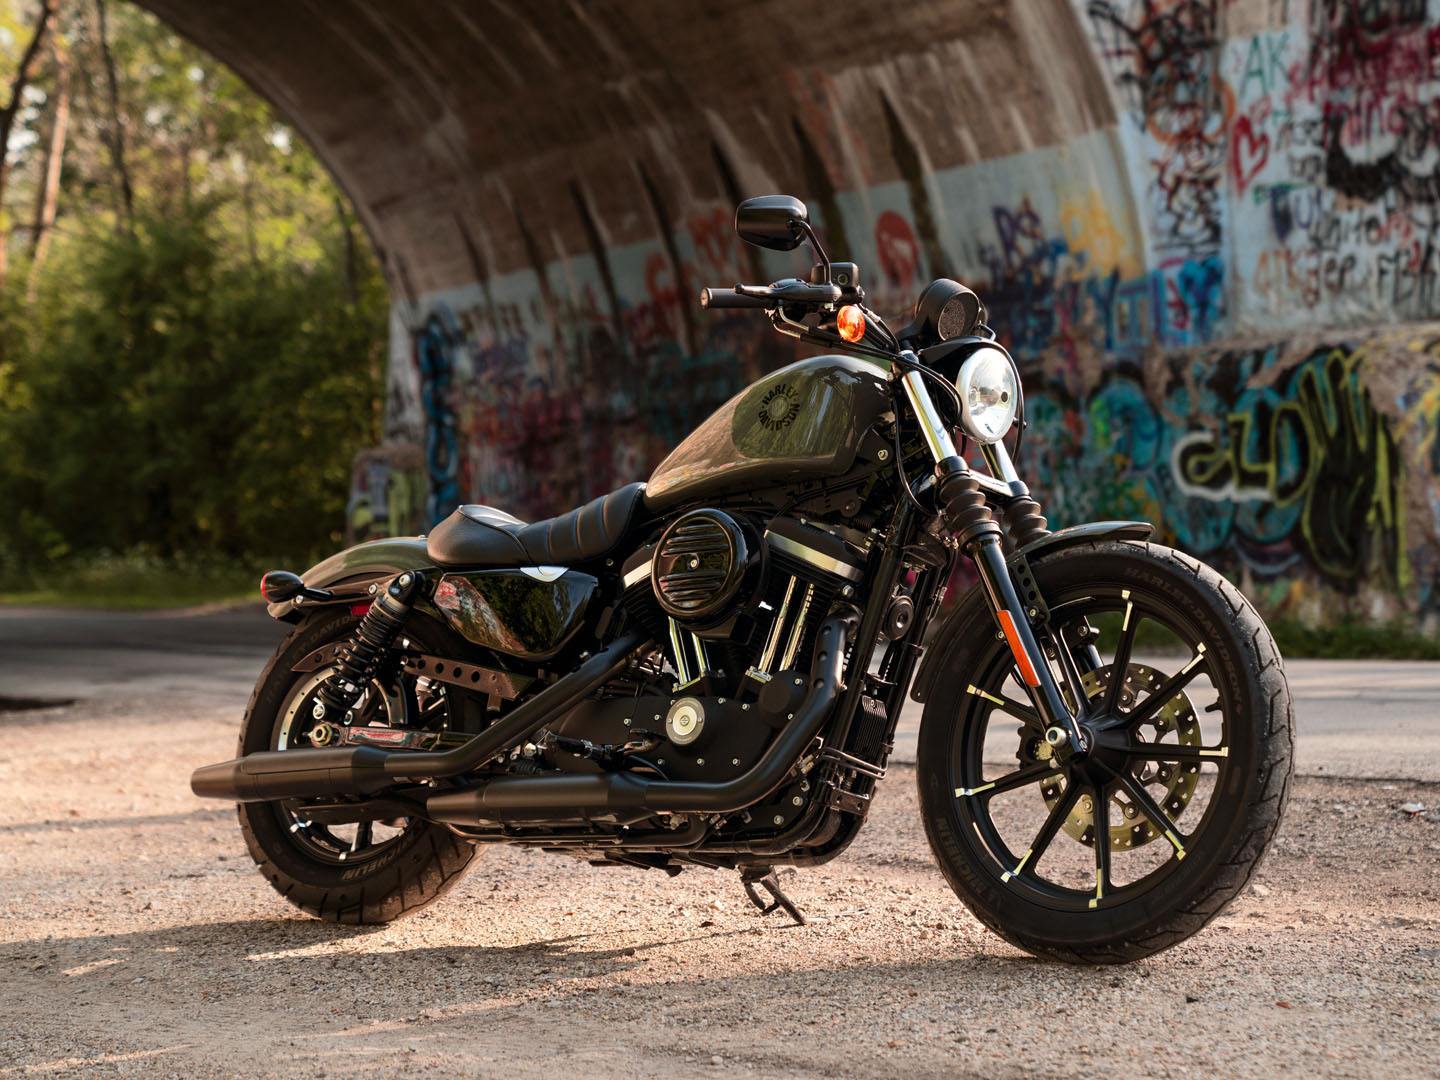 2021 Harley-Davidson Iron 883™ in Baldwin Park, California - Photo 7